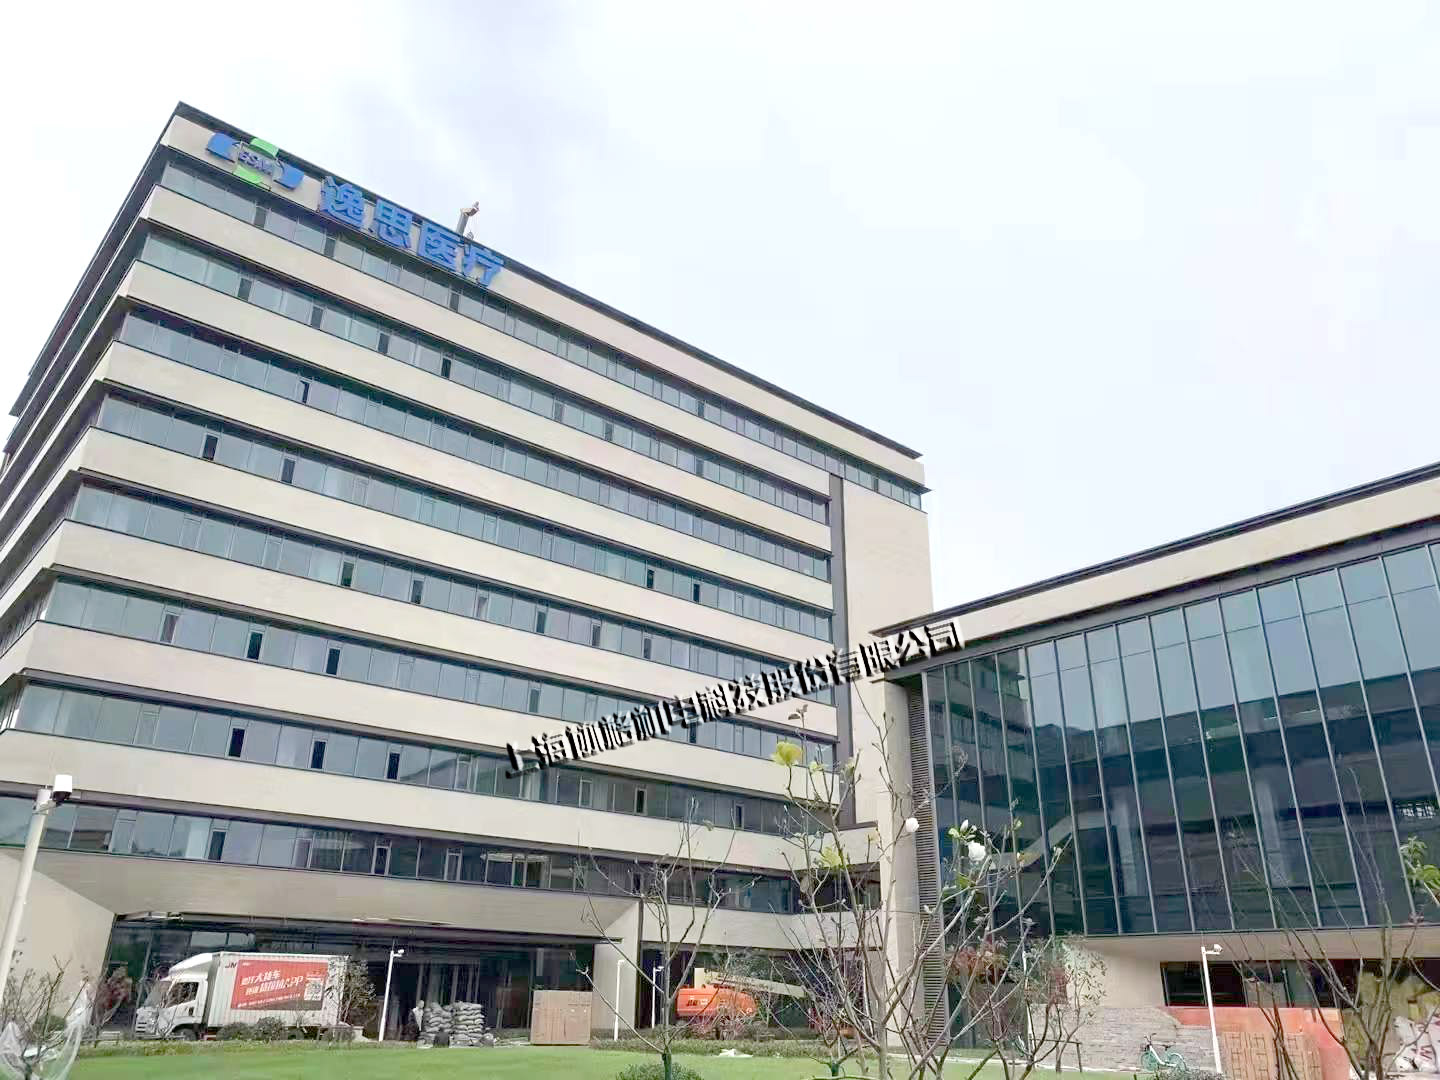 上海协格为逸思医疗科创园提供格力中央空调设备及安装服务。